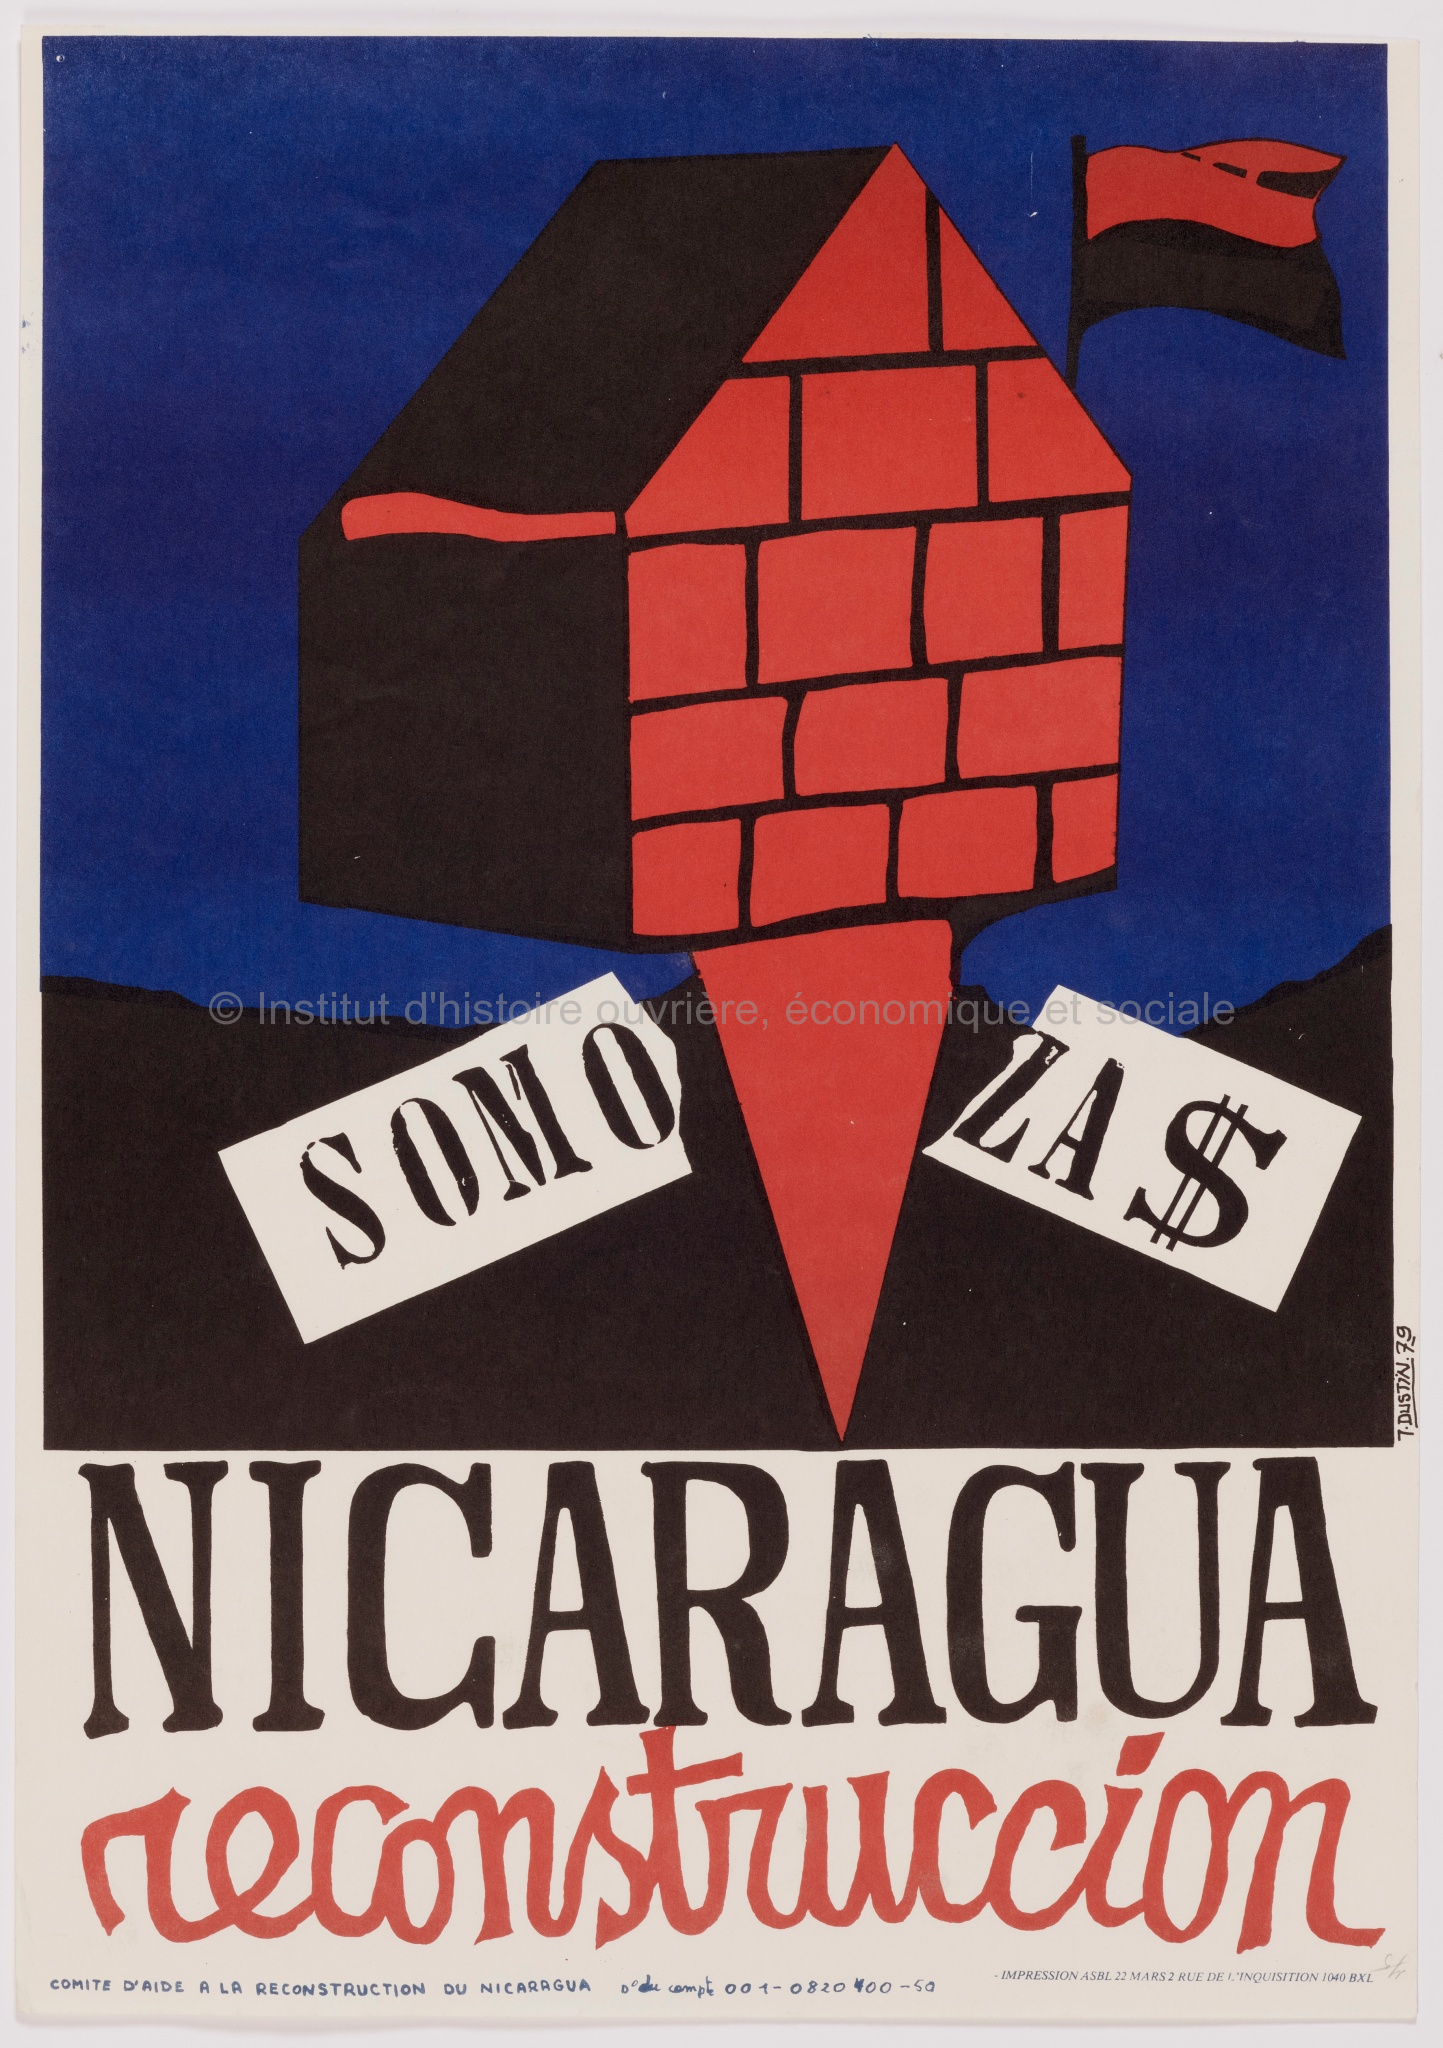 Nicaragua reconstruccion